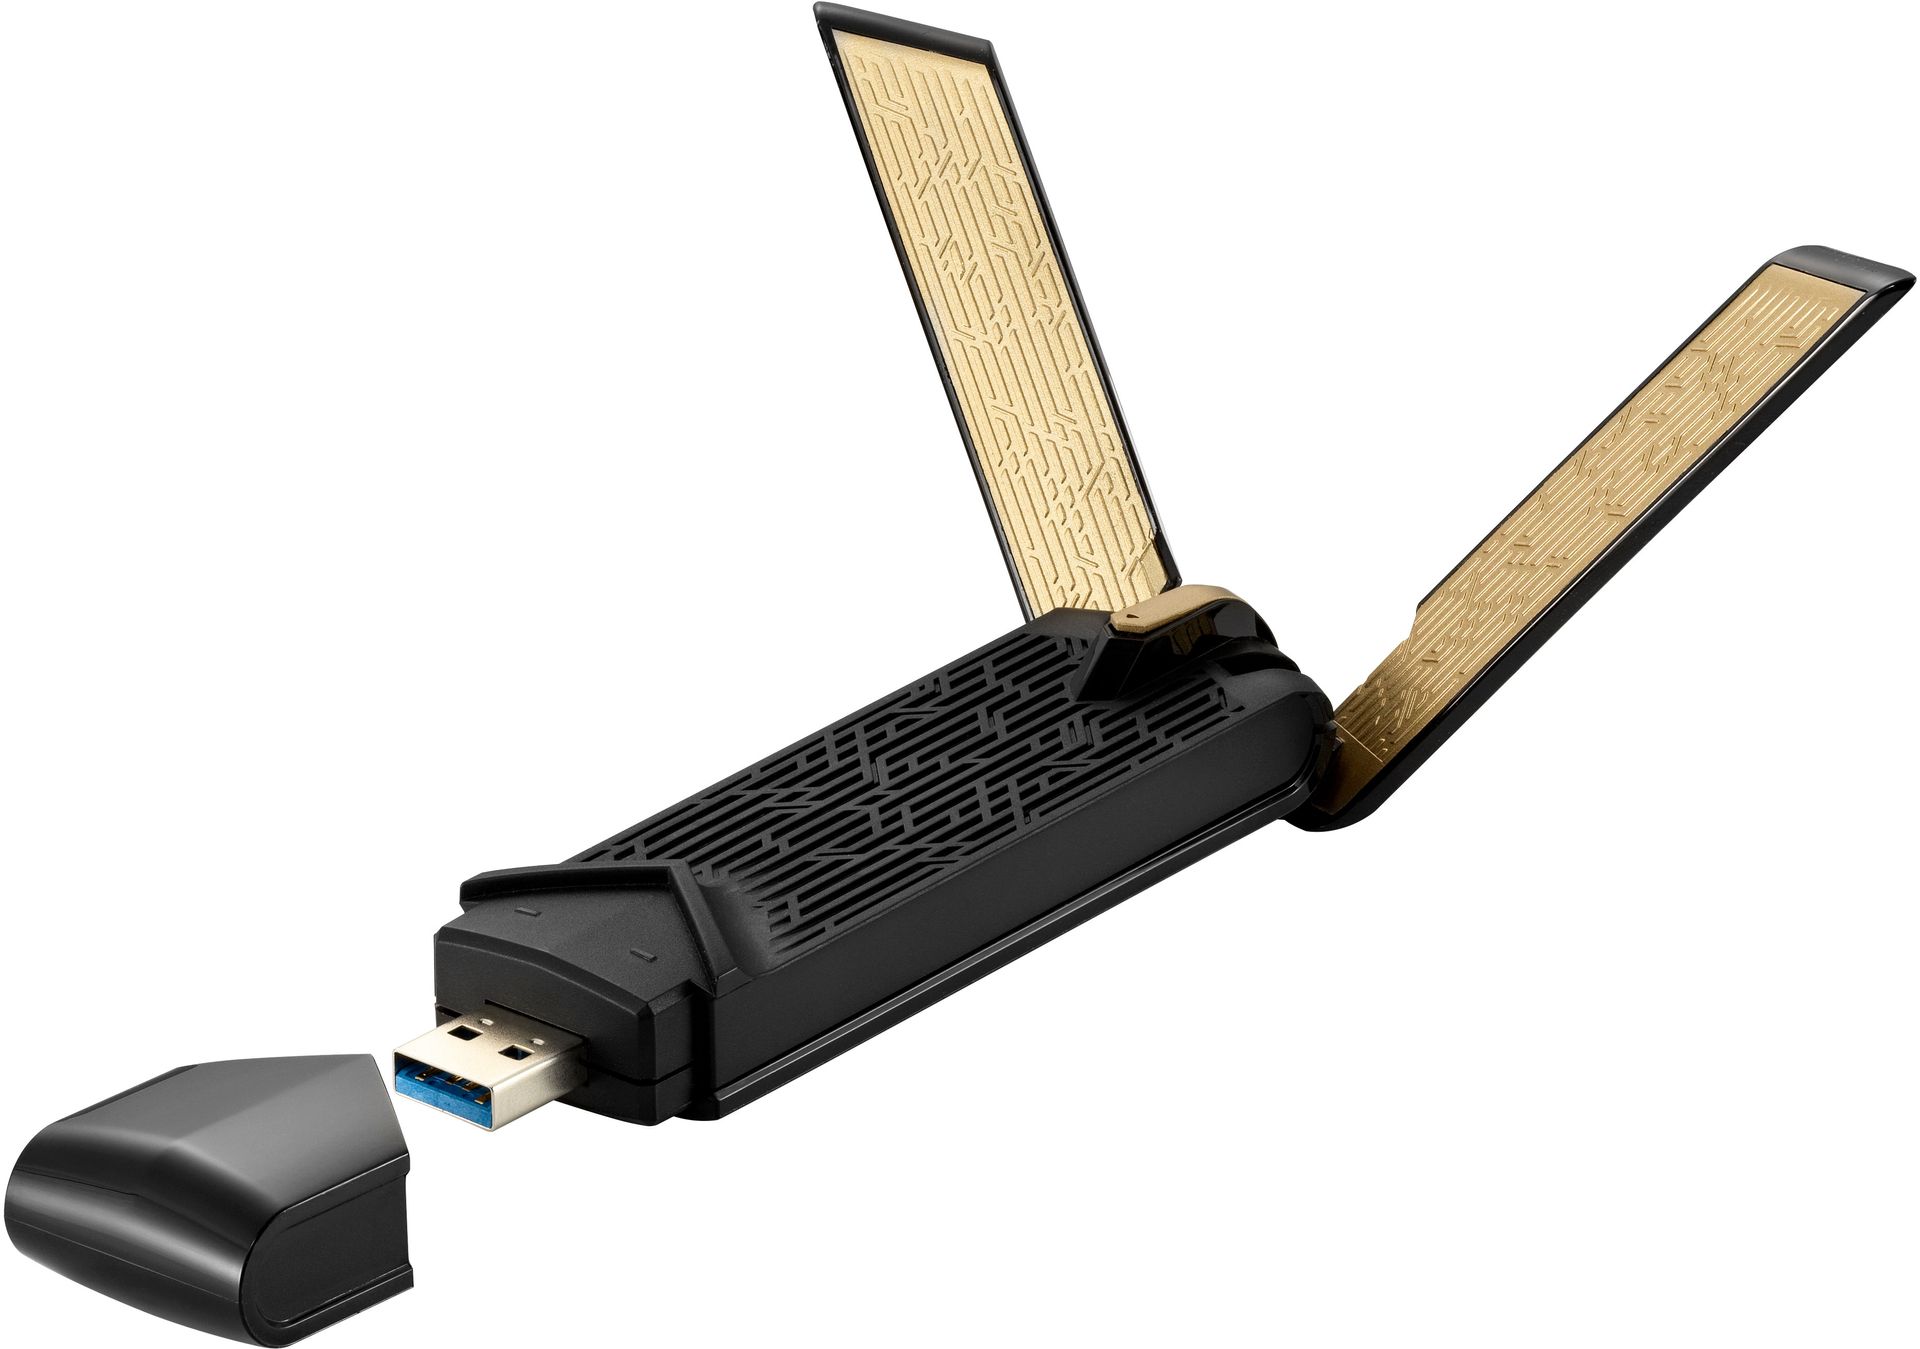 ASUS USB-AX56NC (1800Mb/s a/b/g/n/ac/ax) USB 3.0 - darmowy odbiór w 22 miastach i bezpłatny zwrot Paczkomatem aż do 15 dni